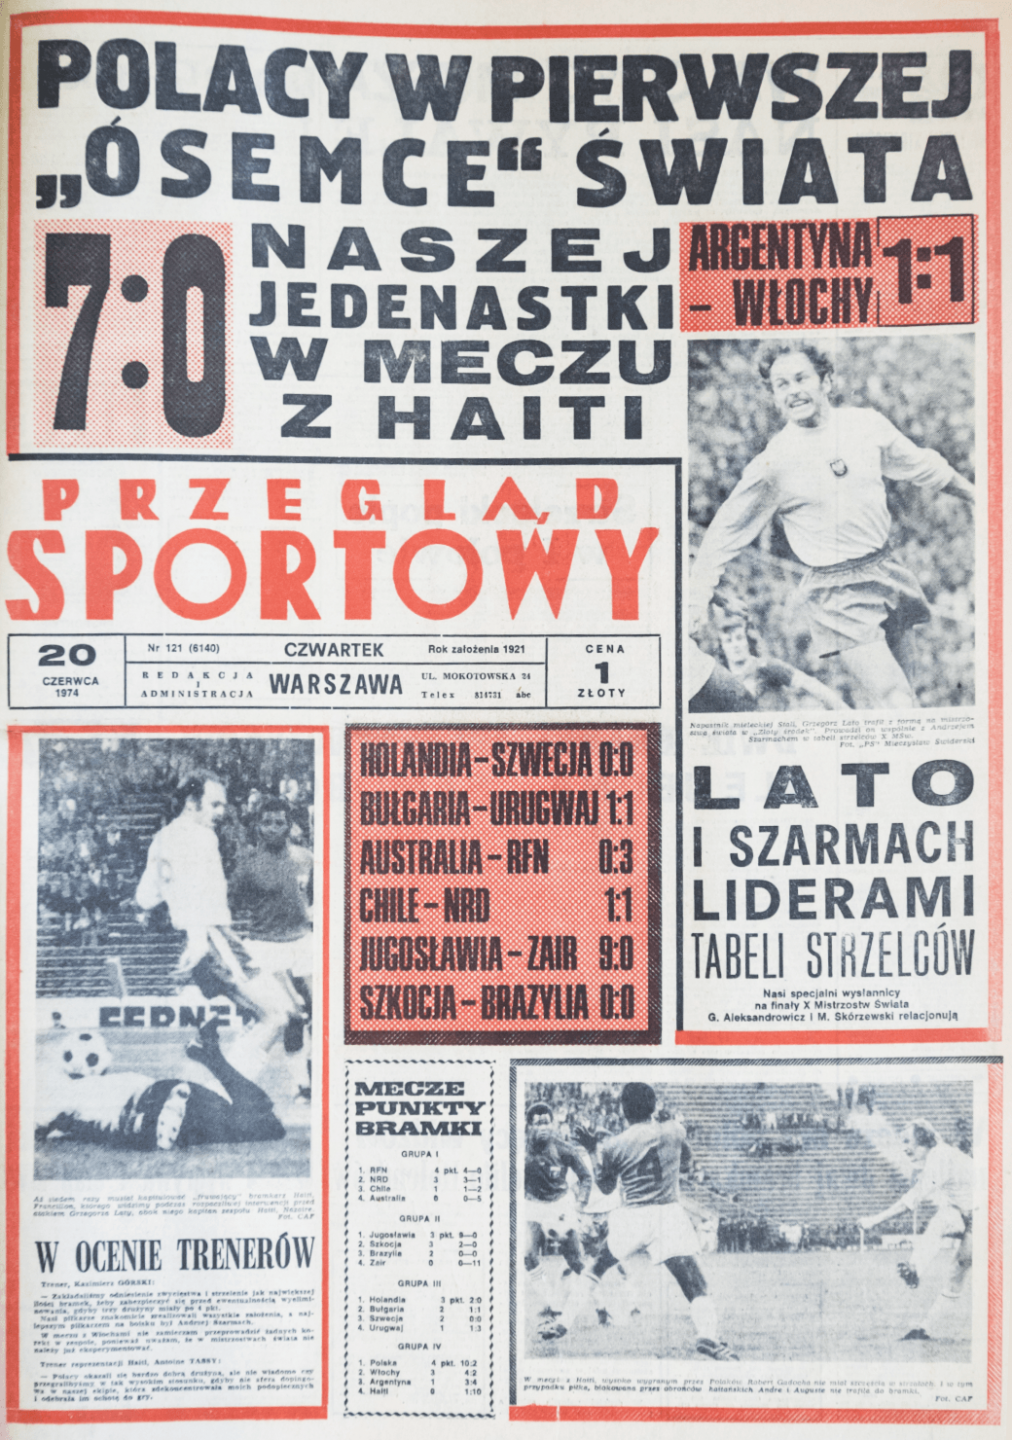 Przegląd Sportowy po meczu Polska - Haiti (19.06.1974)